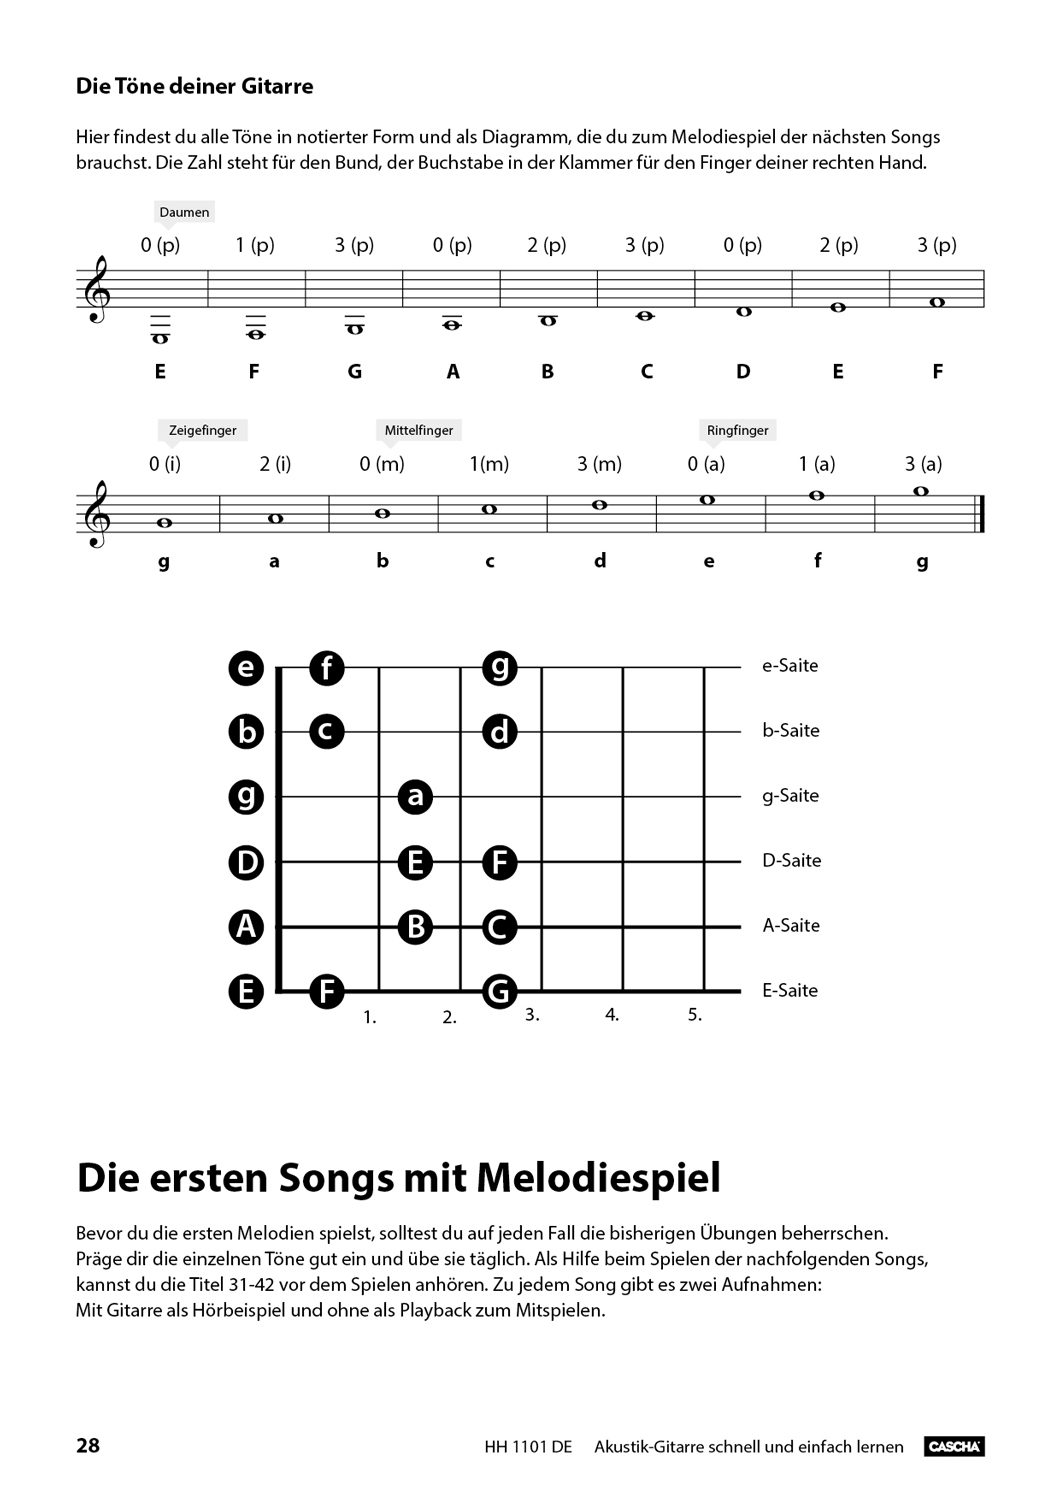 Akustik-Gitarre - Schnell und einfach lernen Seiten 8